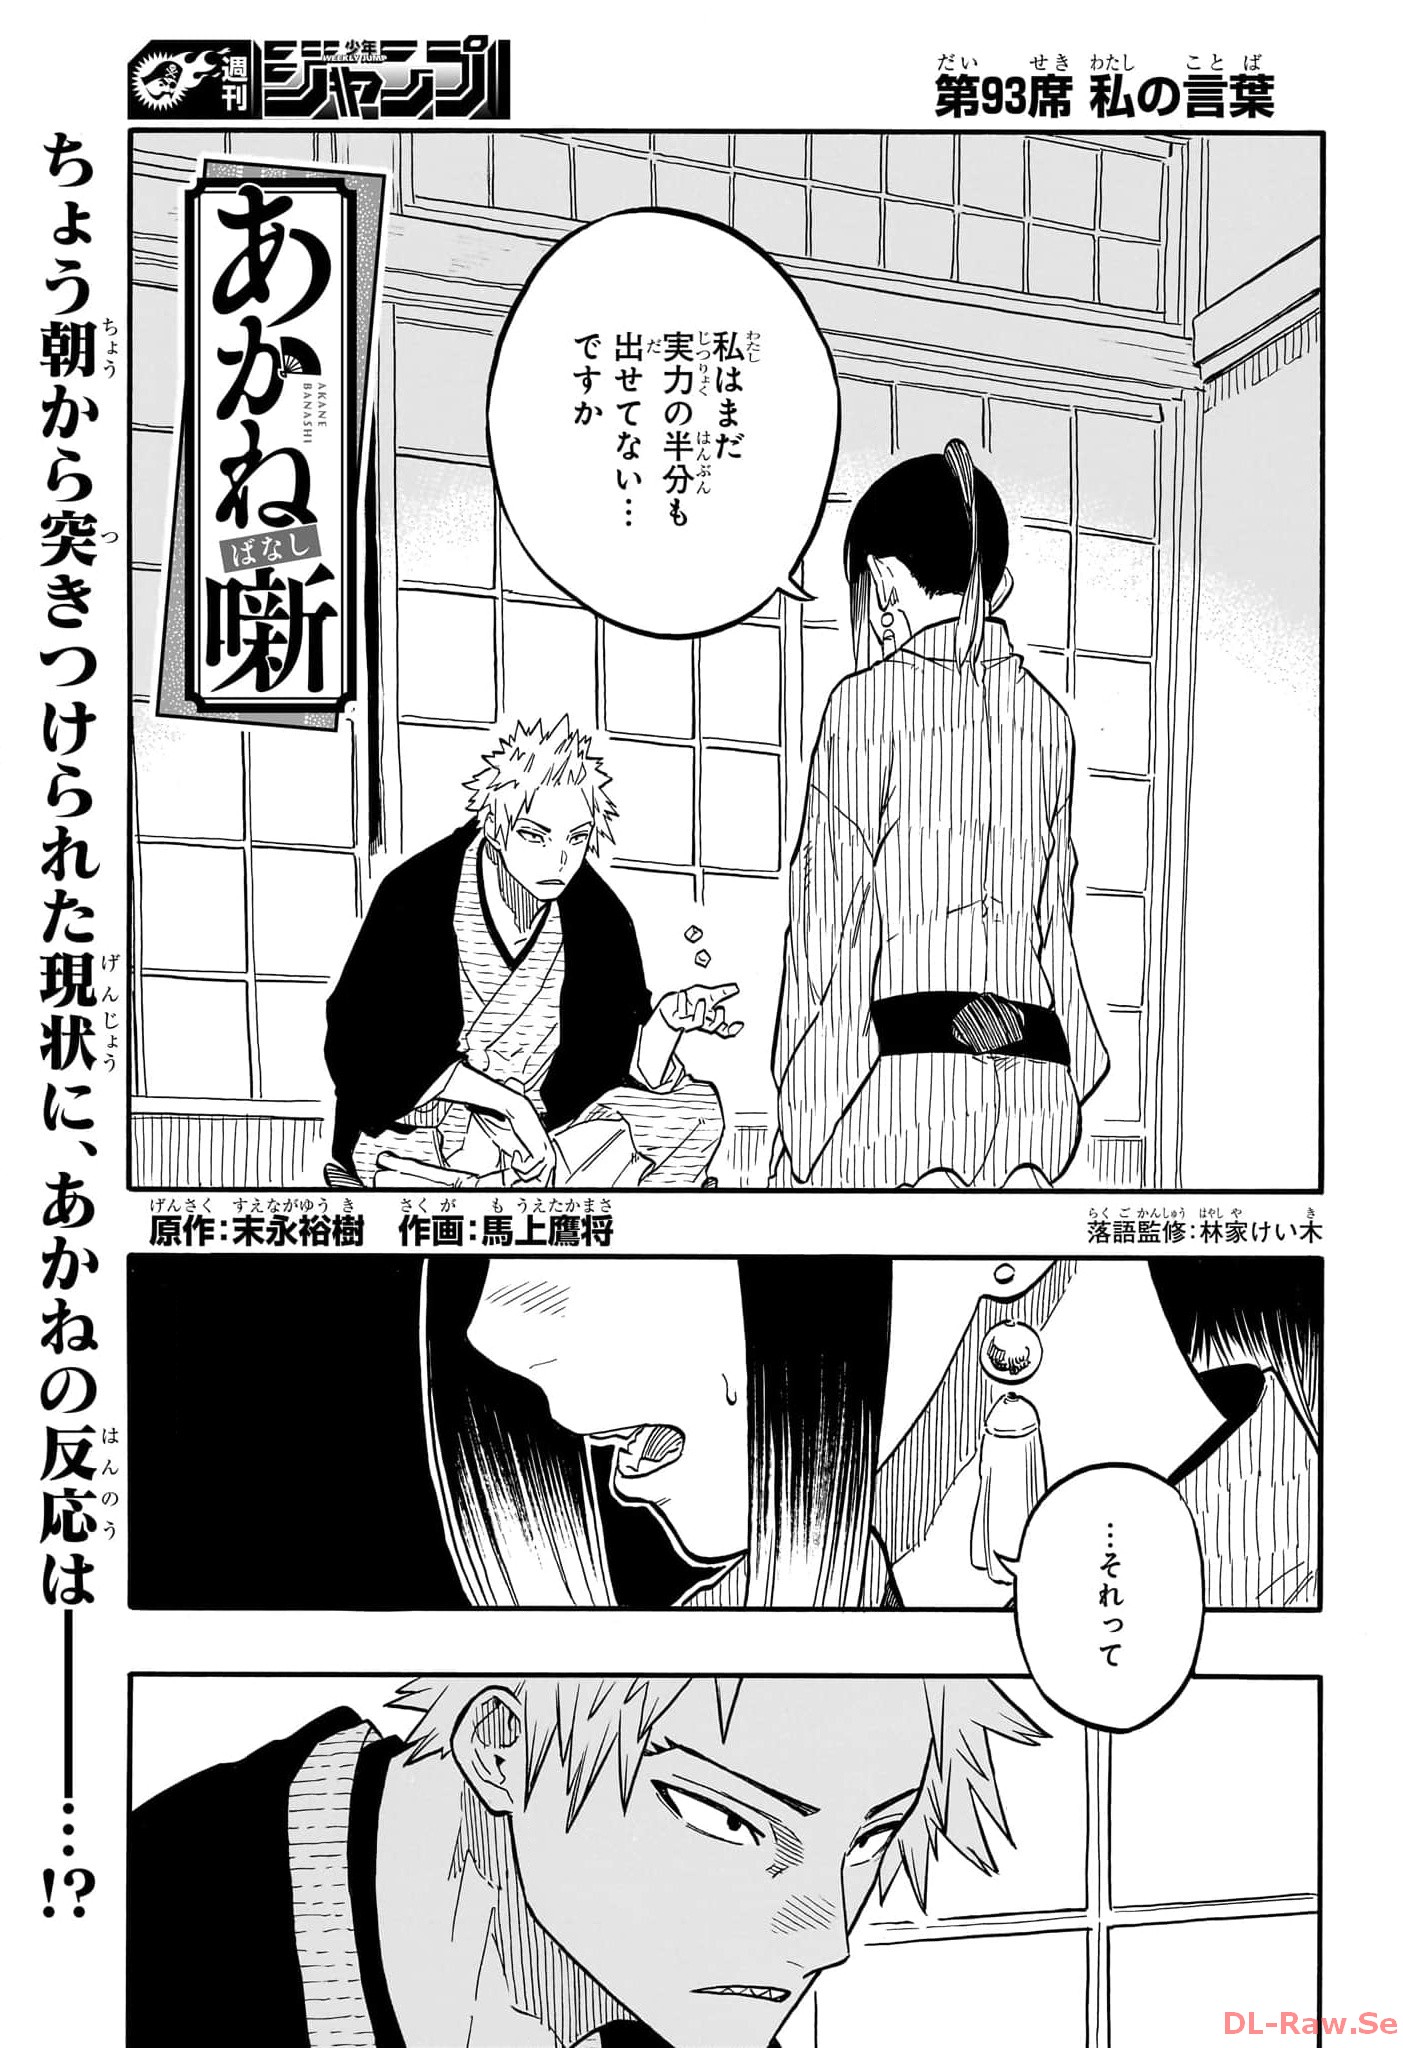 Akane-Banashi - Chapter 93 - Page 1